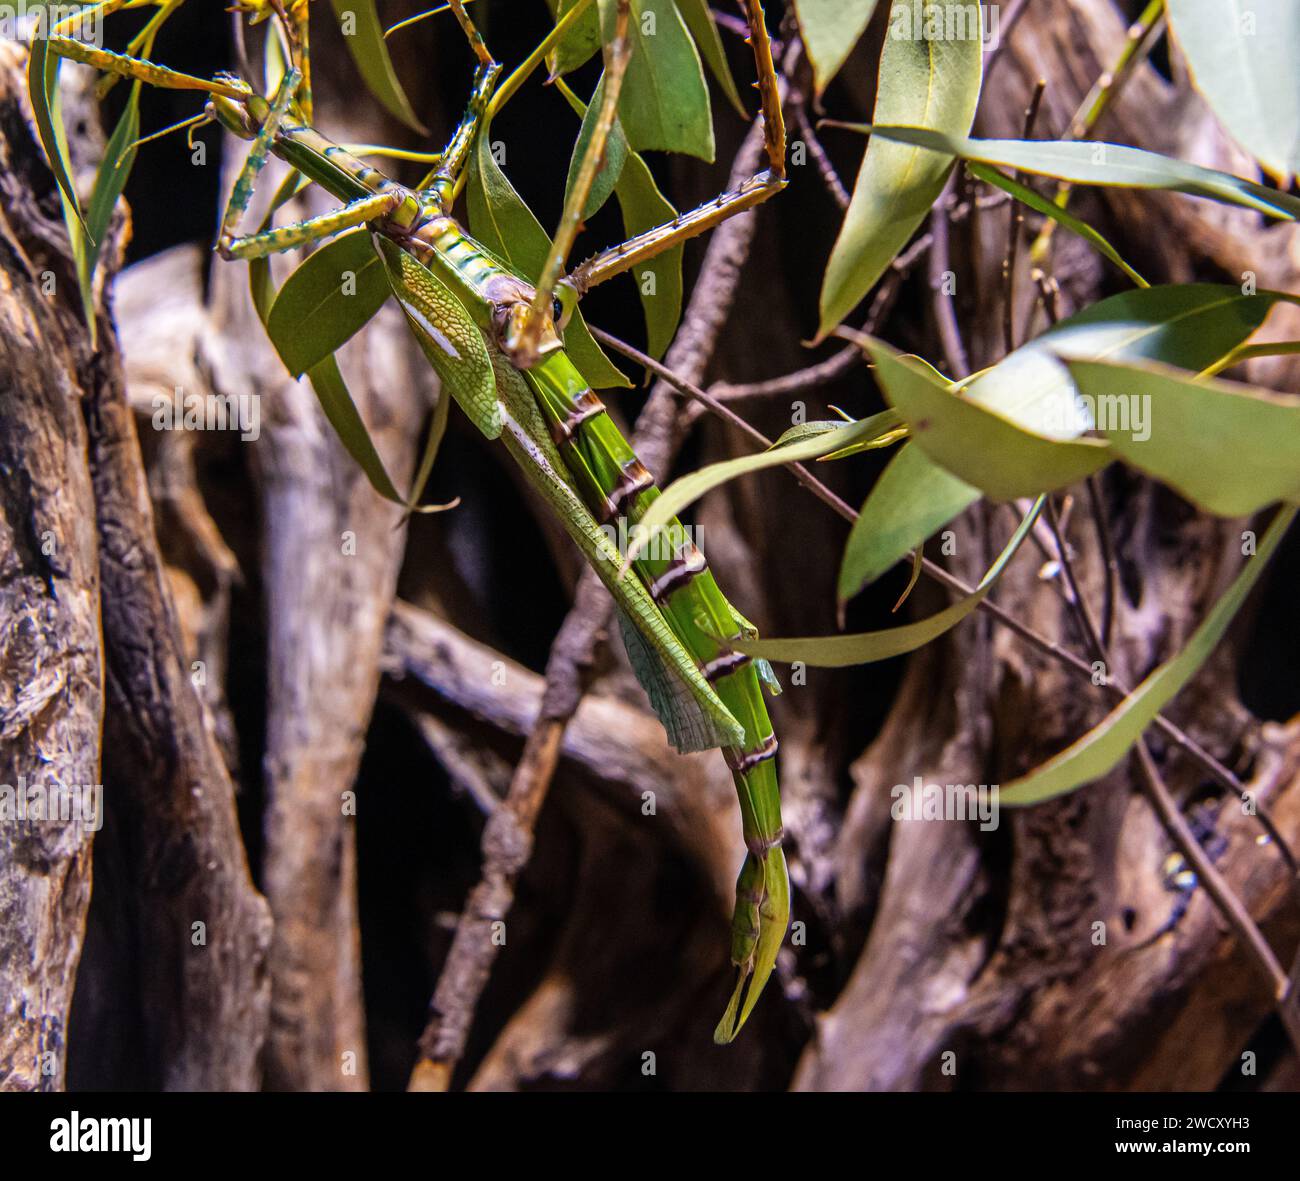 walking sticks insect (Diapherodes gigantea). hanging in vegetation Stock Photo